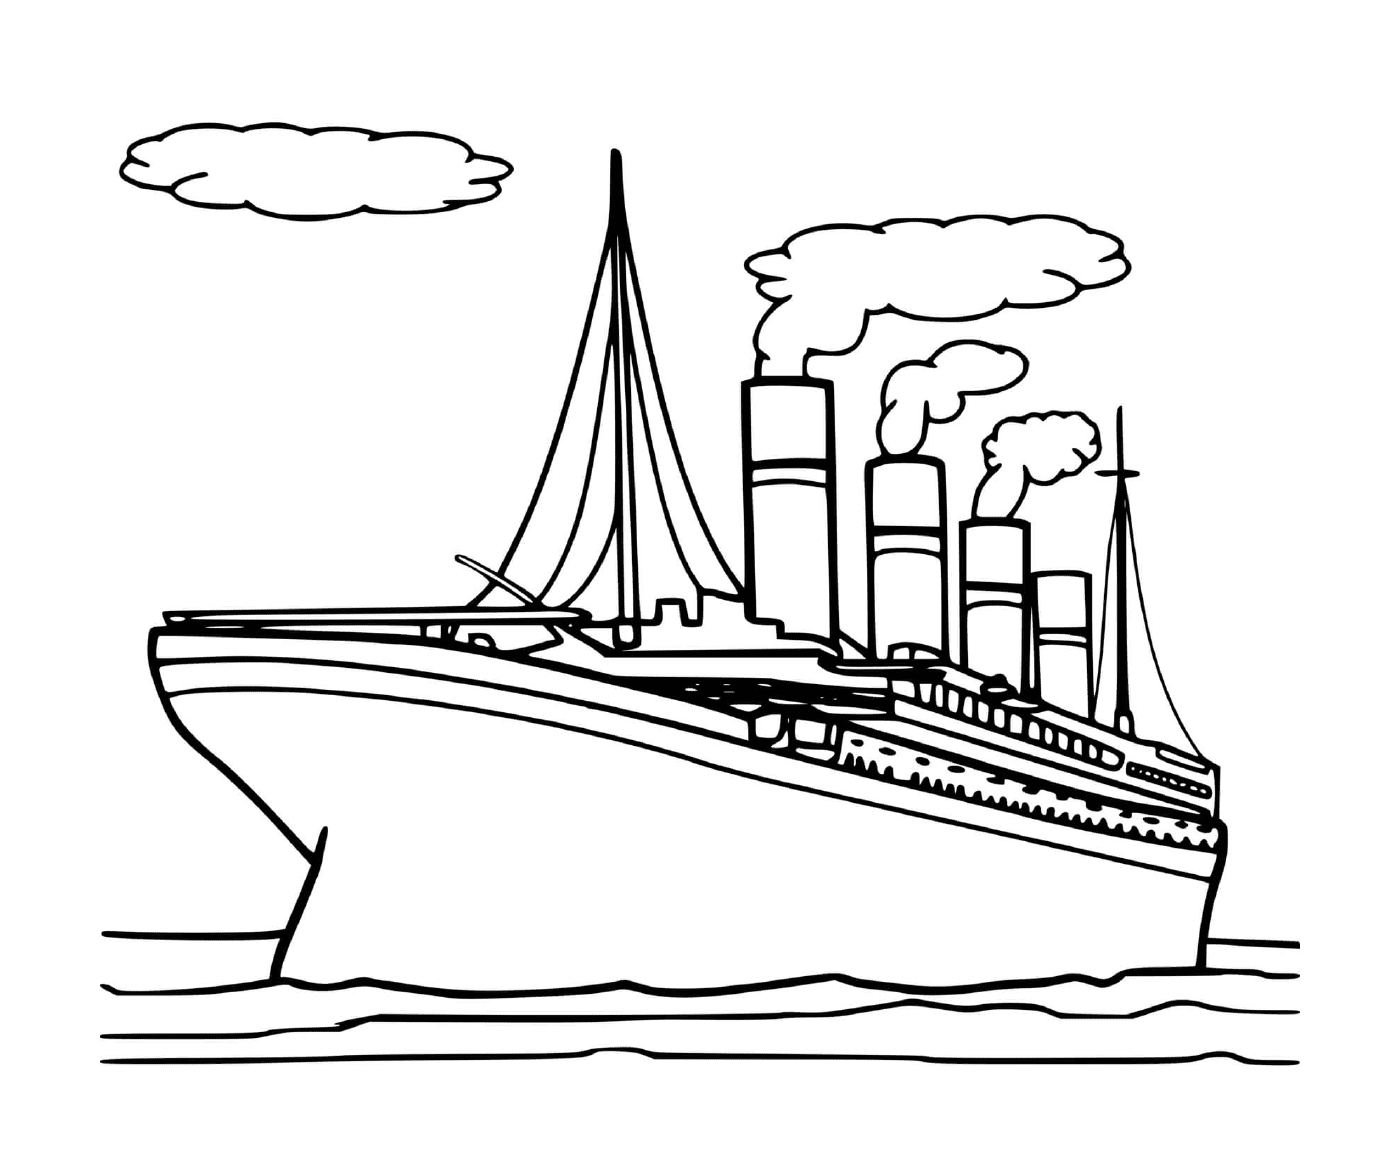   Le bateau Titanic 